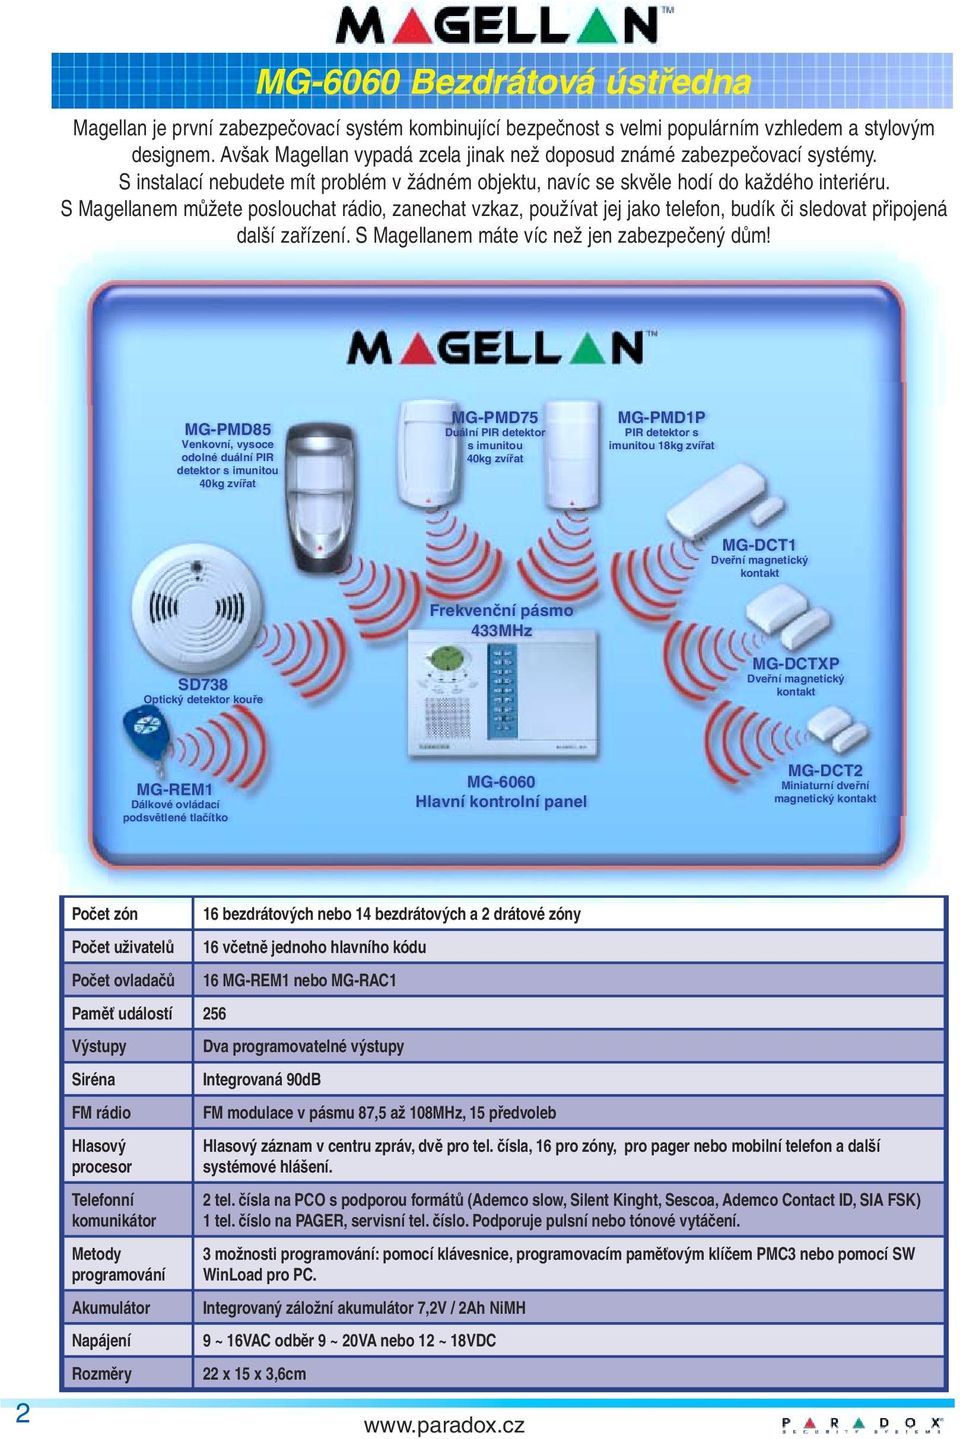 S Magellanem můžete poslouchat rádio, zanechat vzkaz, používat jej jako telefon, budík či sledovat připojená další zařízení. S Magellanem máte víc než jen zabezpečený dům!